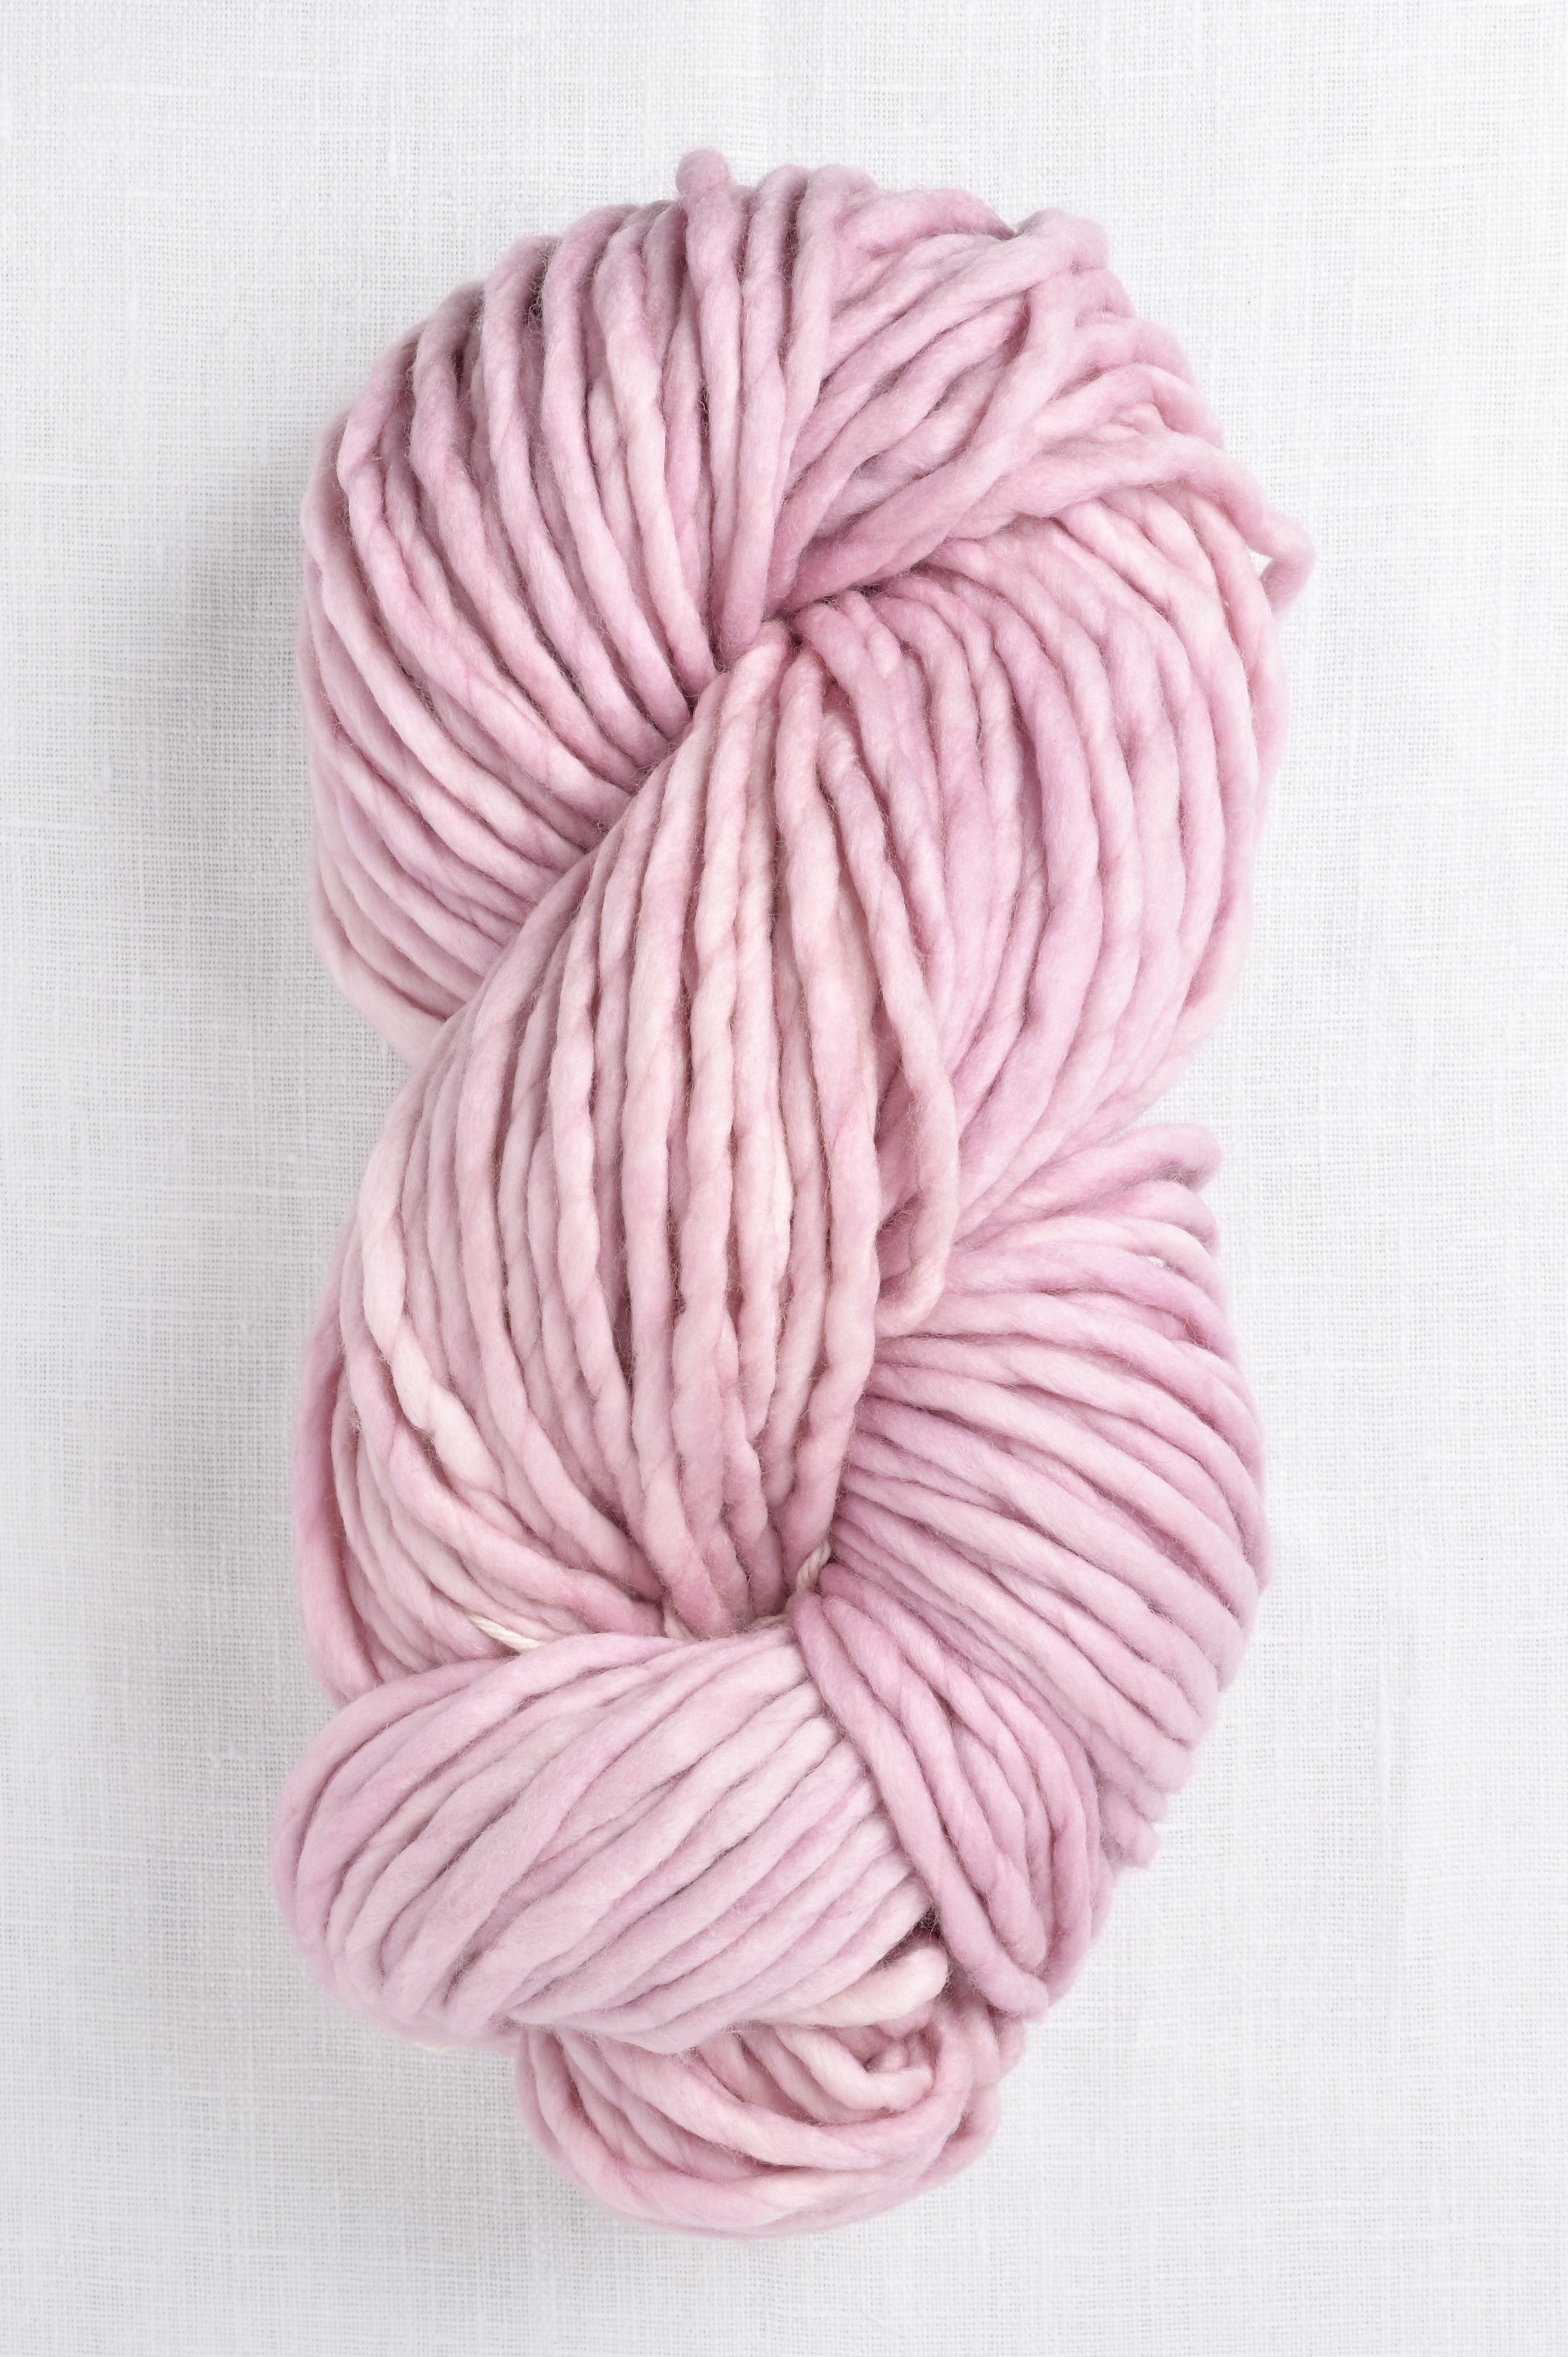 Super Chunky Roving Bulky Yarn for Hand Knitting Crochet, 250g, 8.8 Ounze  (Beige)